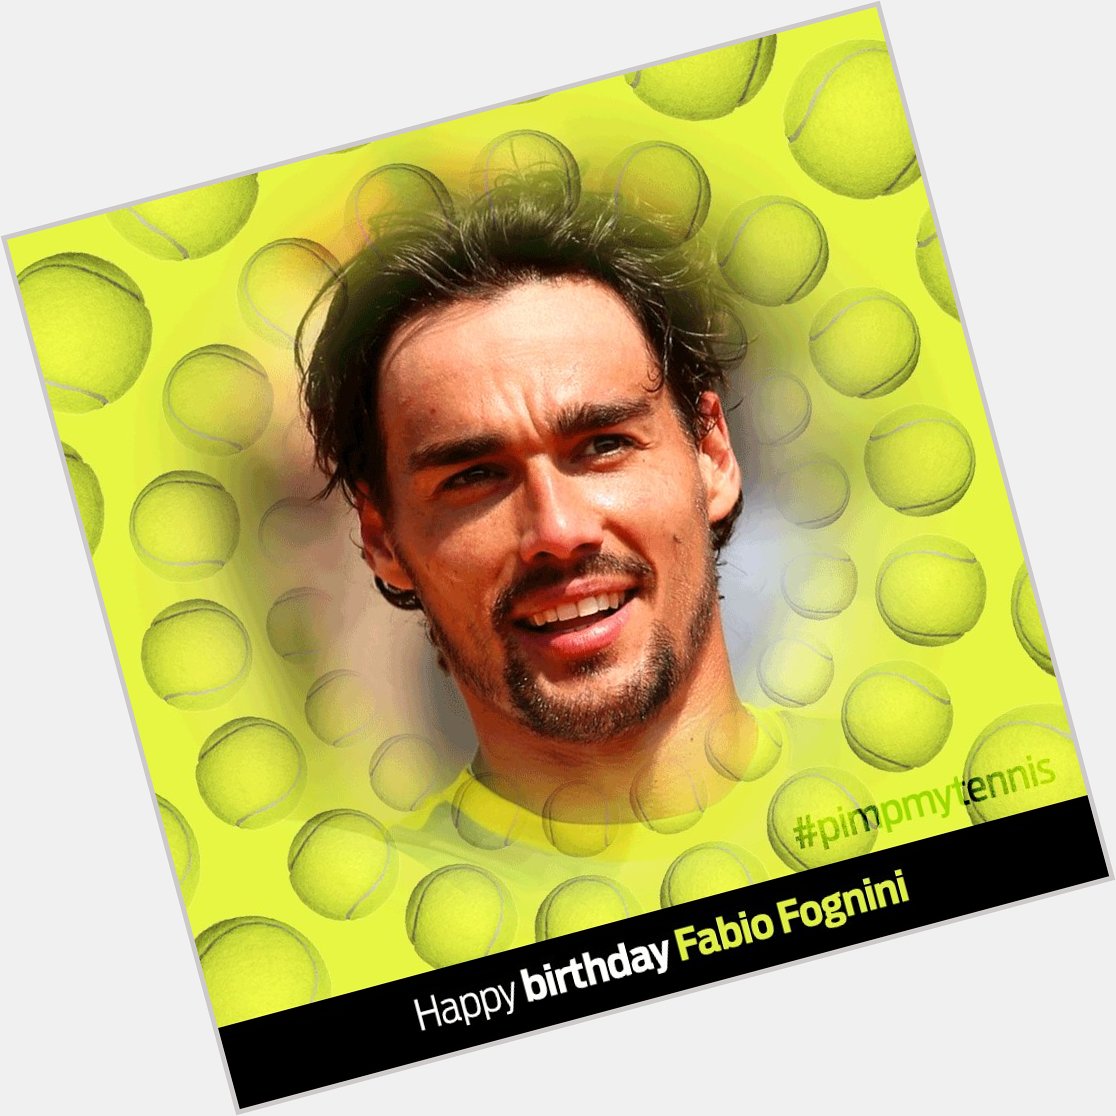  Happy birthday / Felice compleanno Fabio!!! 